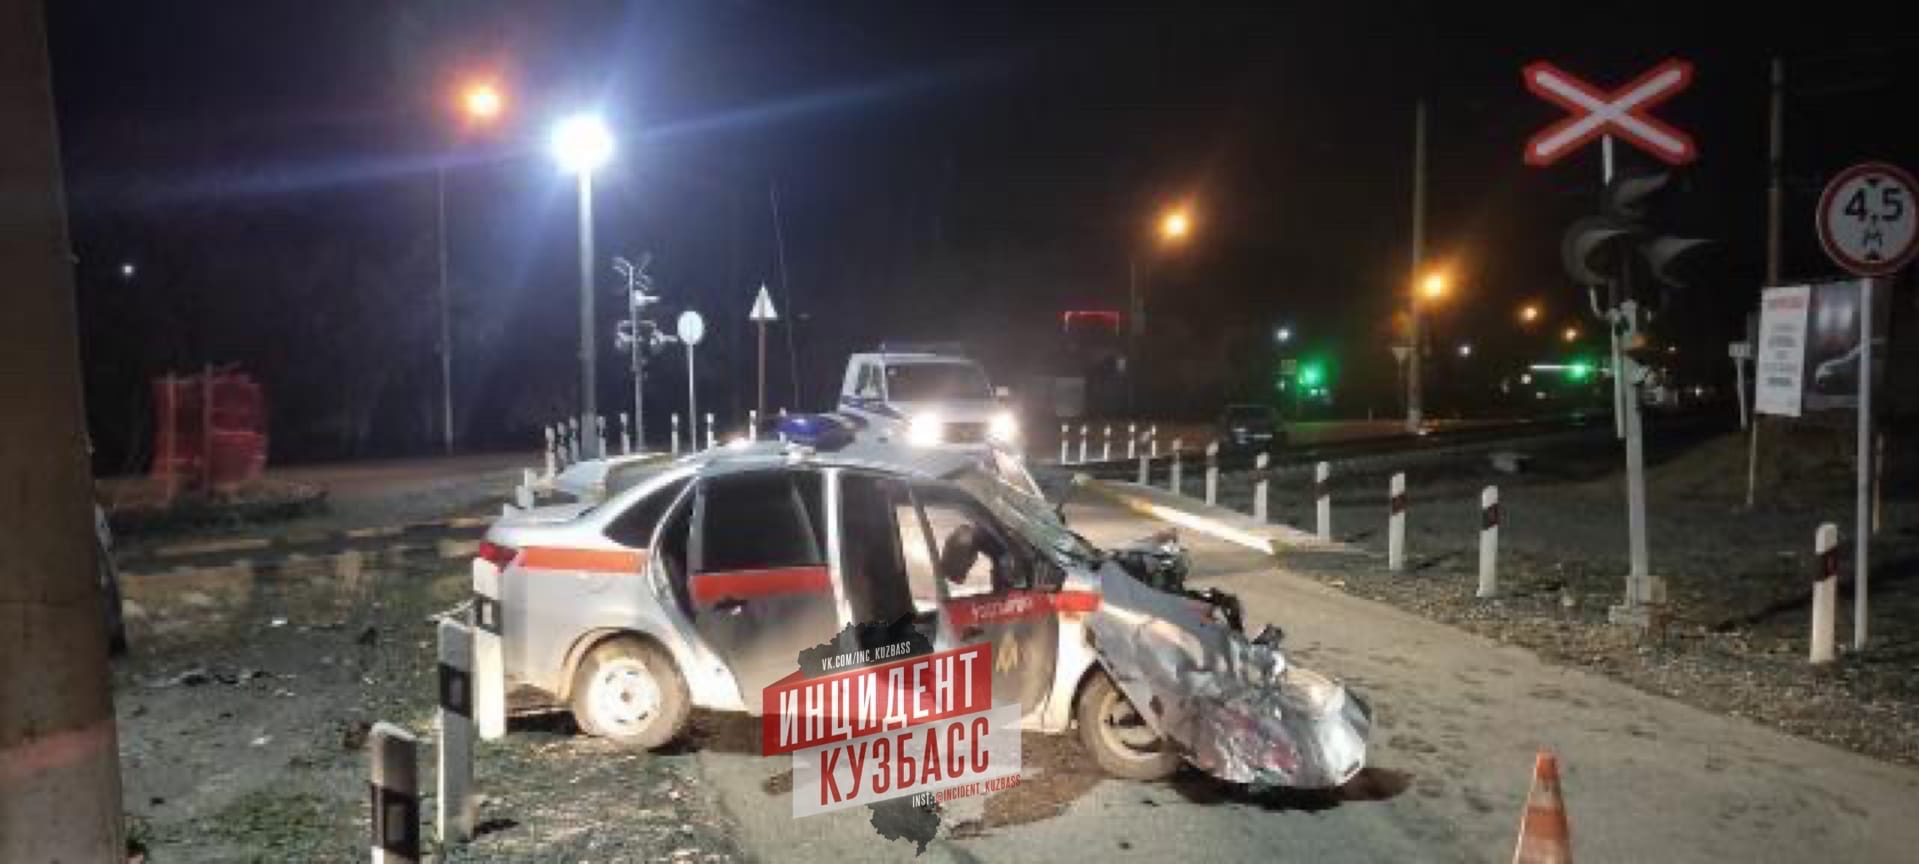 «Двигался на тревожный вызов»: в Кузбассе столкнулись поезд и автомобиль Росгвардии